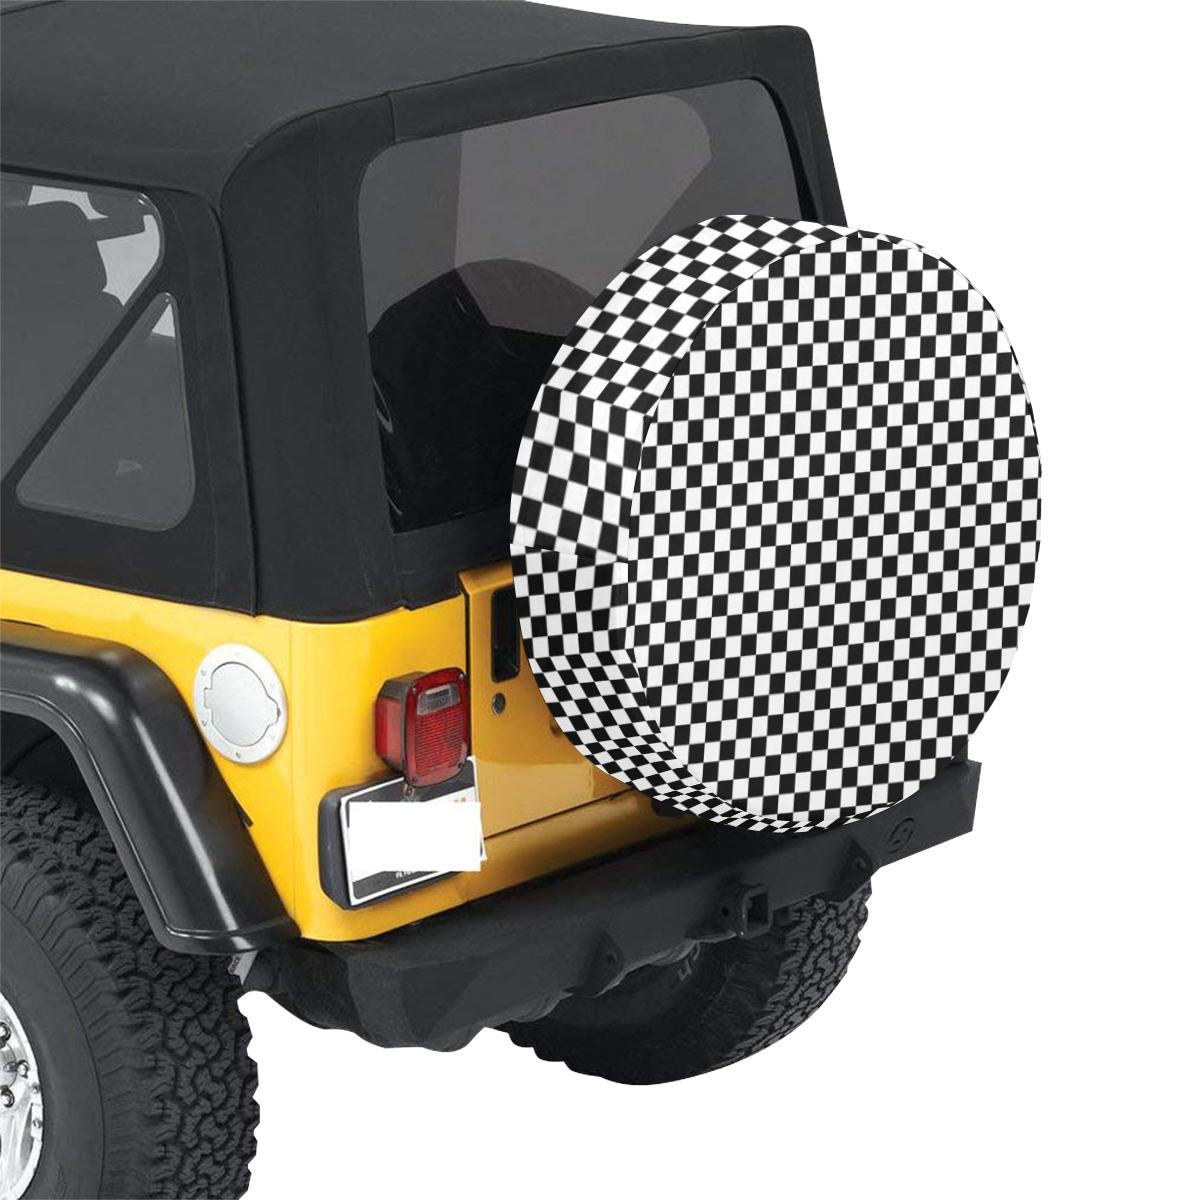 Checkerboard Black And White 30 Inch Spare Tire Cover